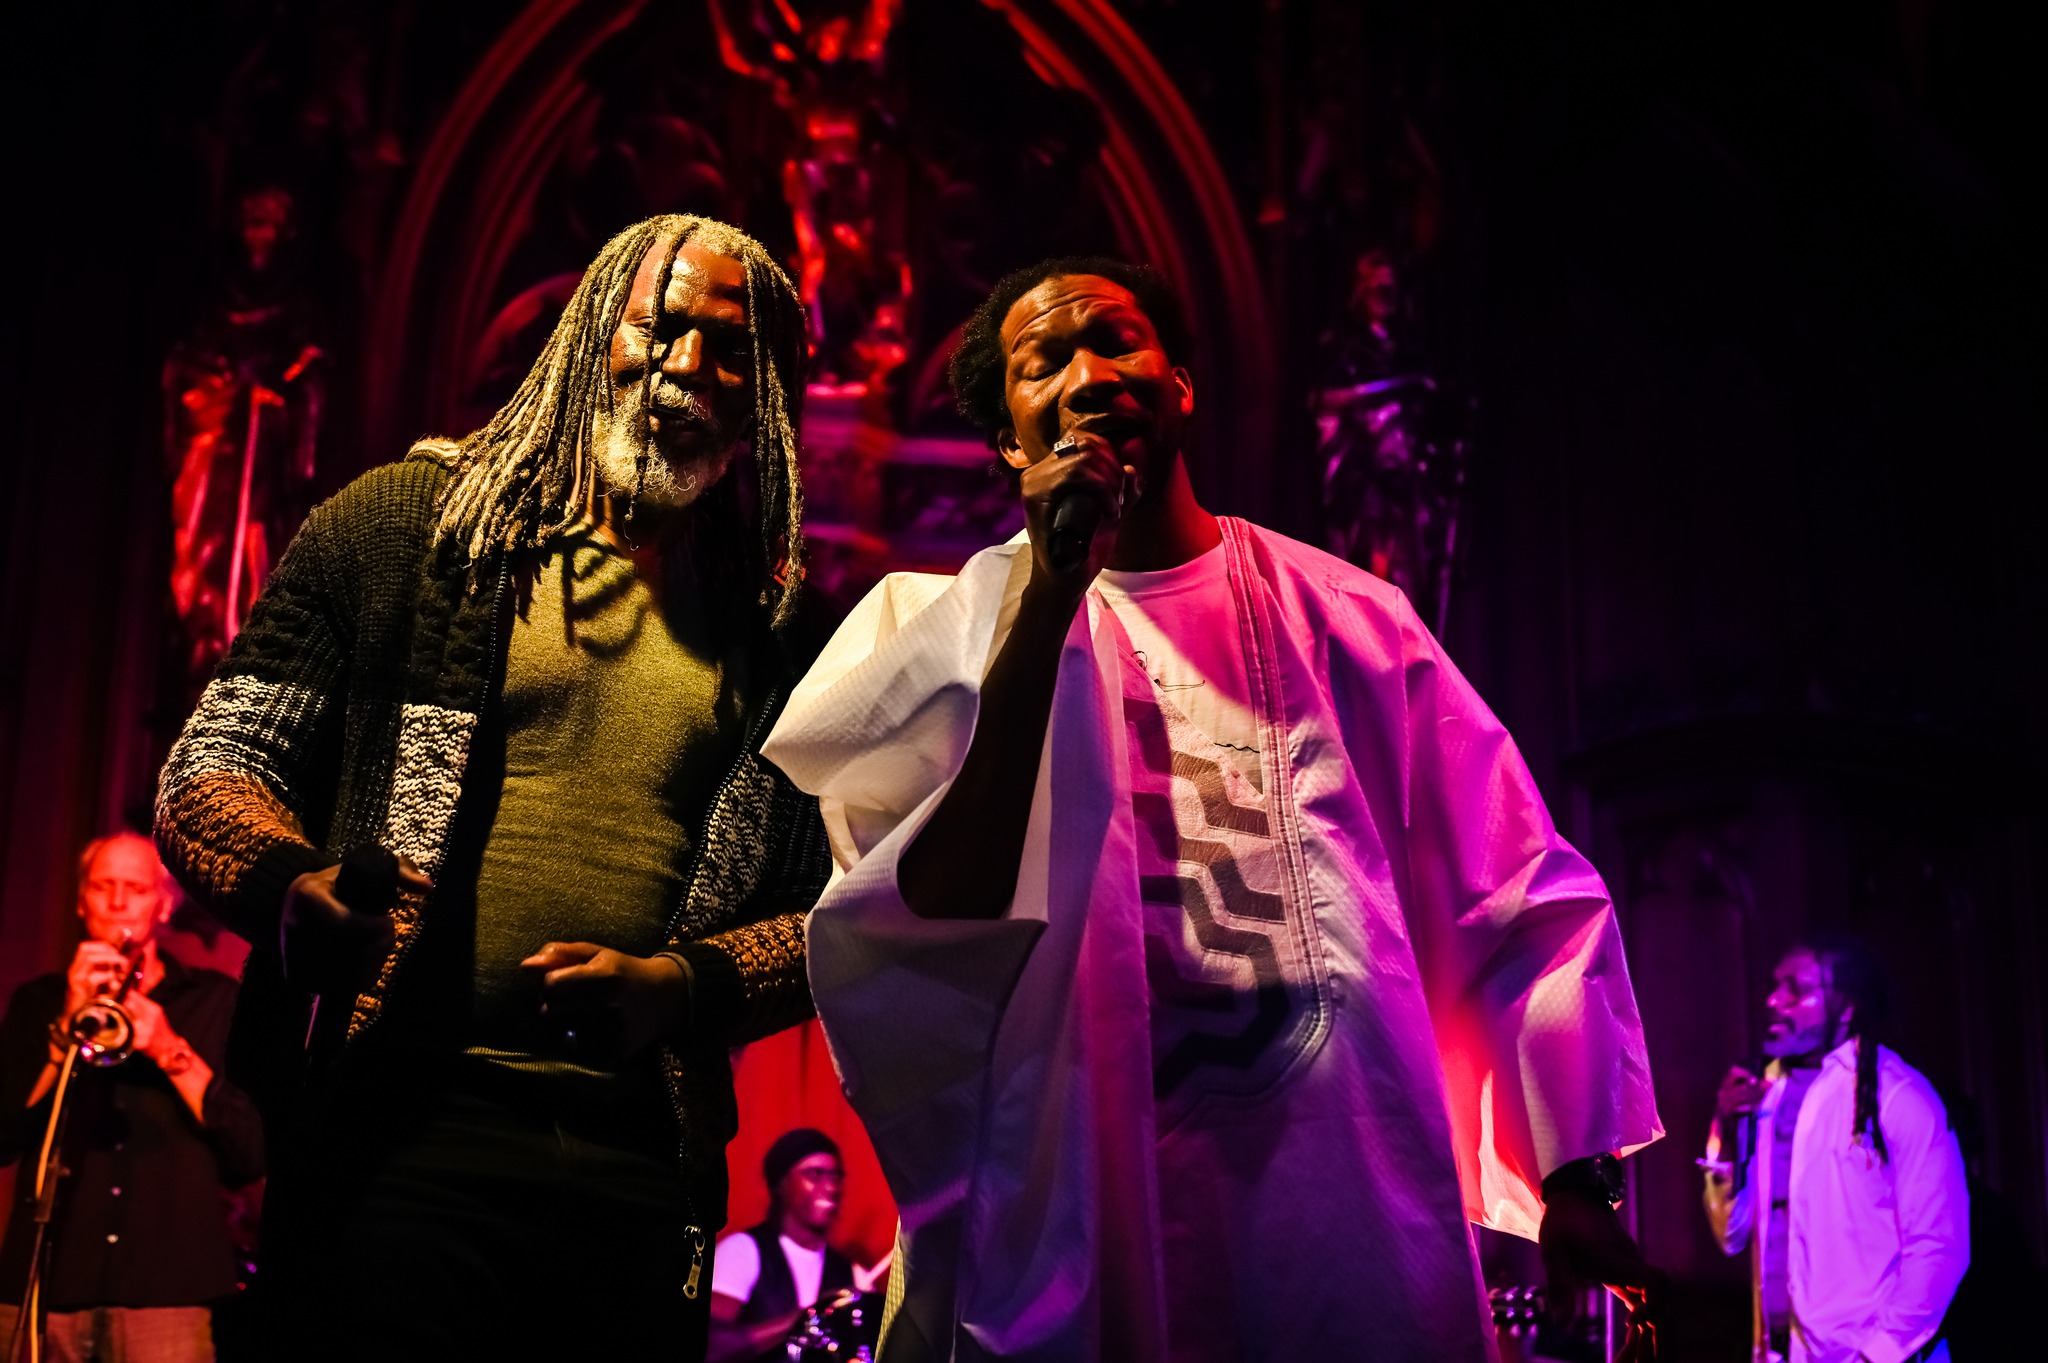 Rencontre sur scène entre l’artiste mauritanien Ziza Youssouf et Tiken Jah Fakoly, l’icône mondiale du reggae